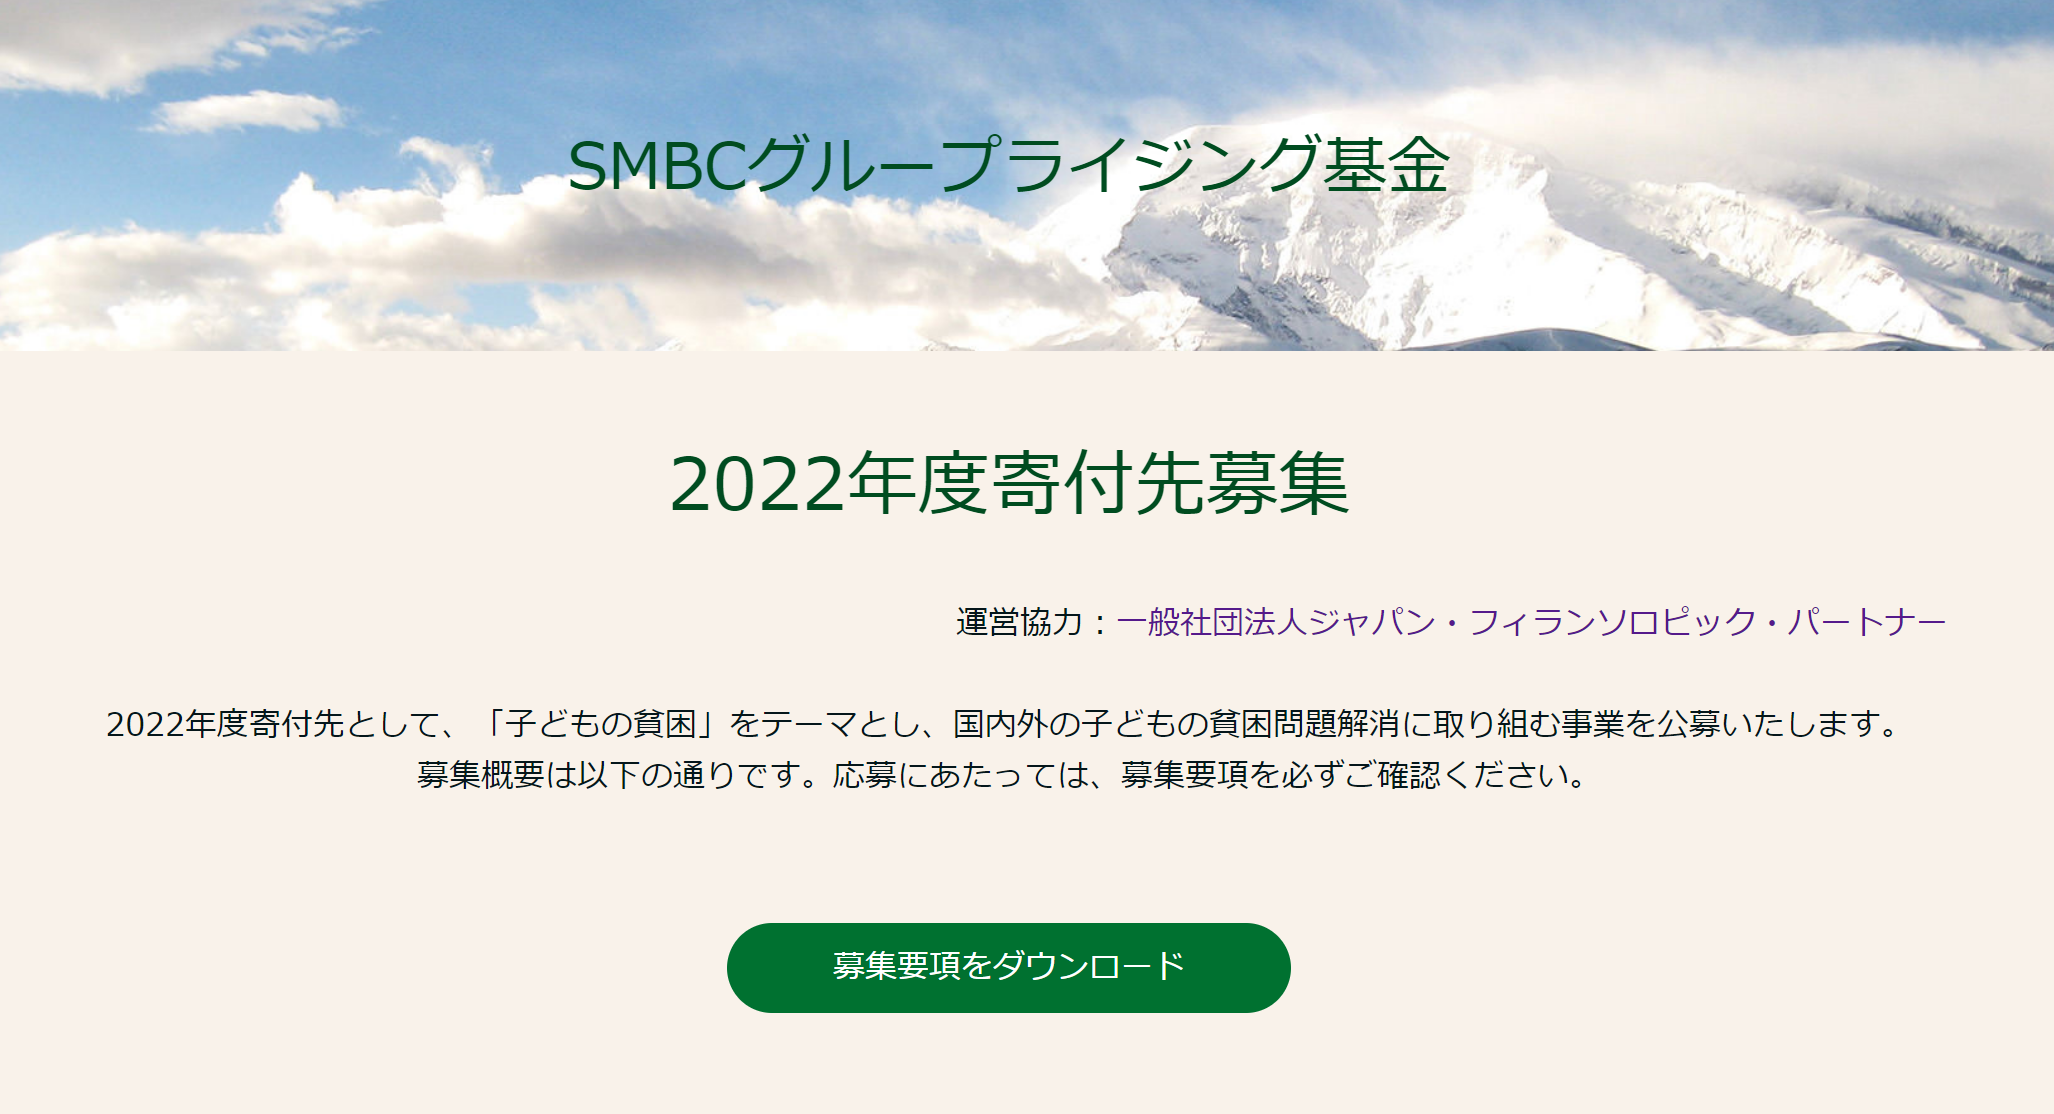 【11/25〆切】SMBCグループライジング基金2022年度寄付先募集について